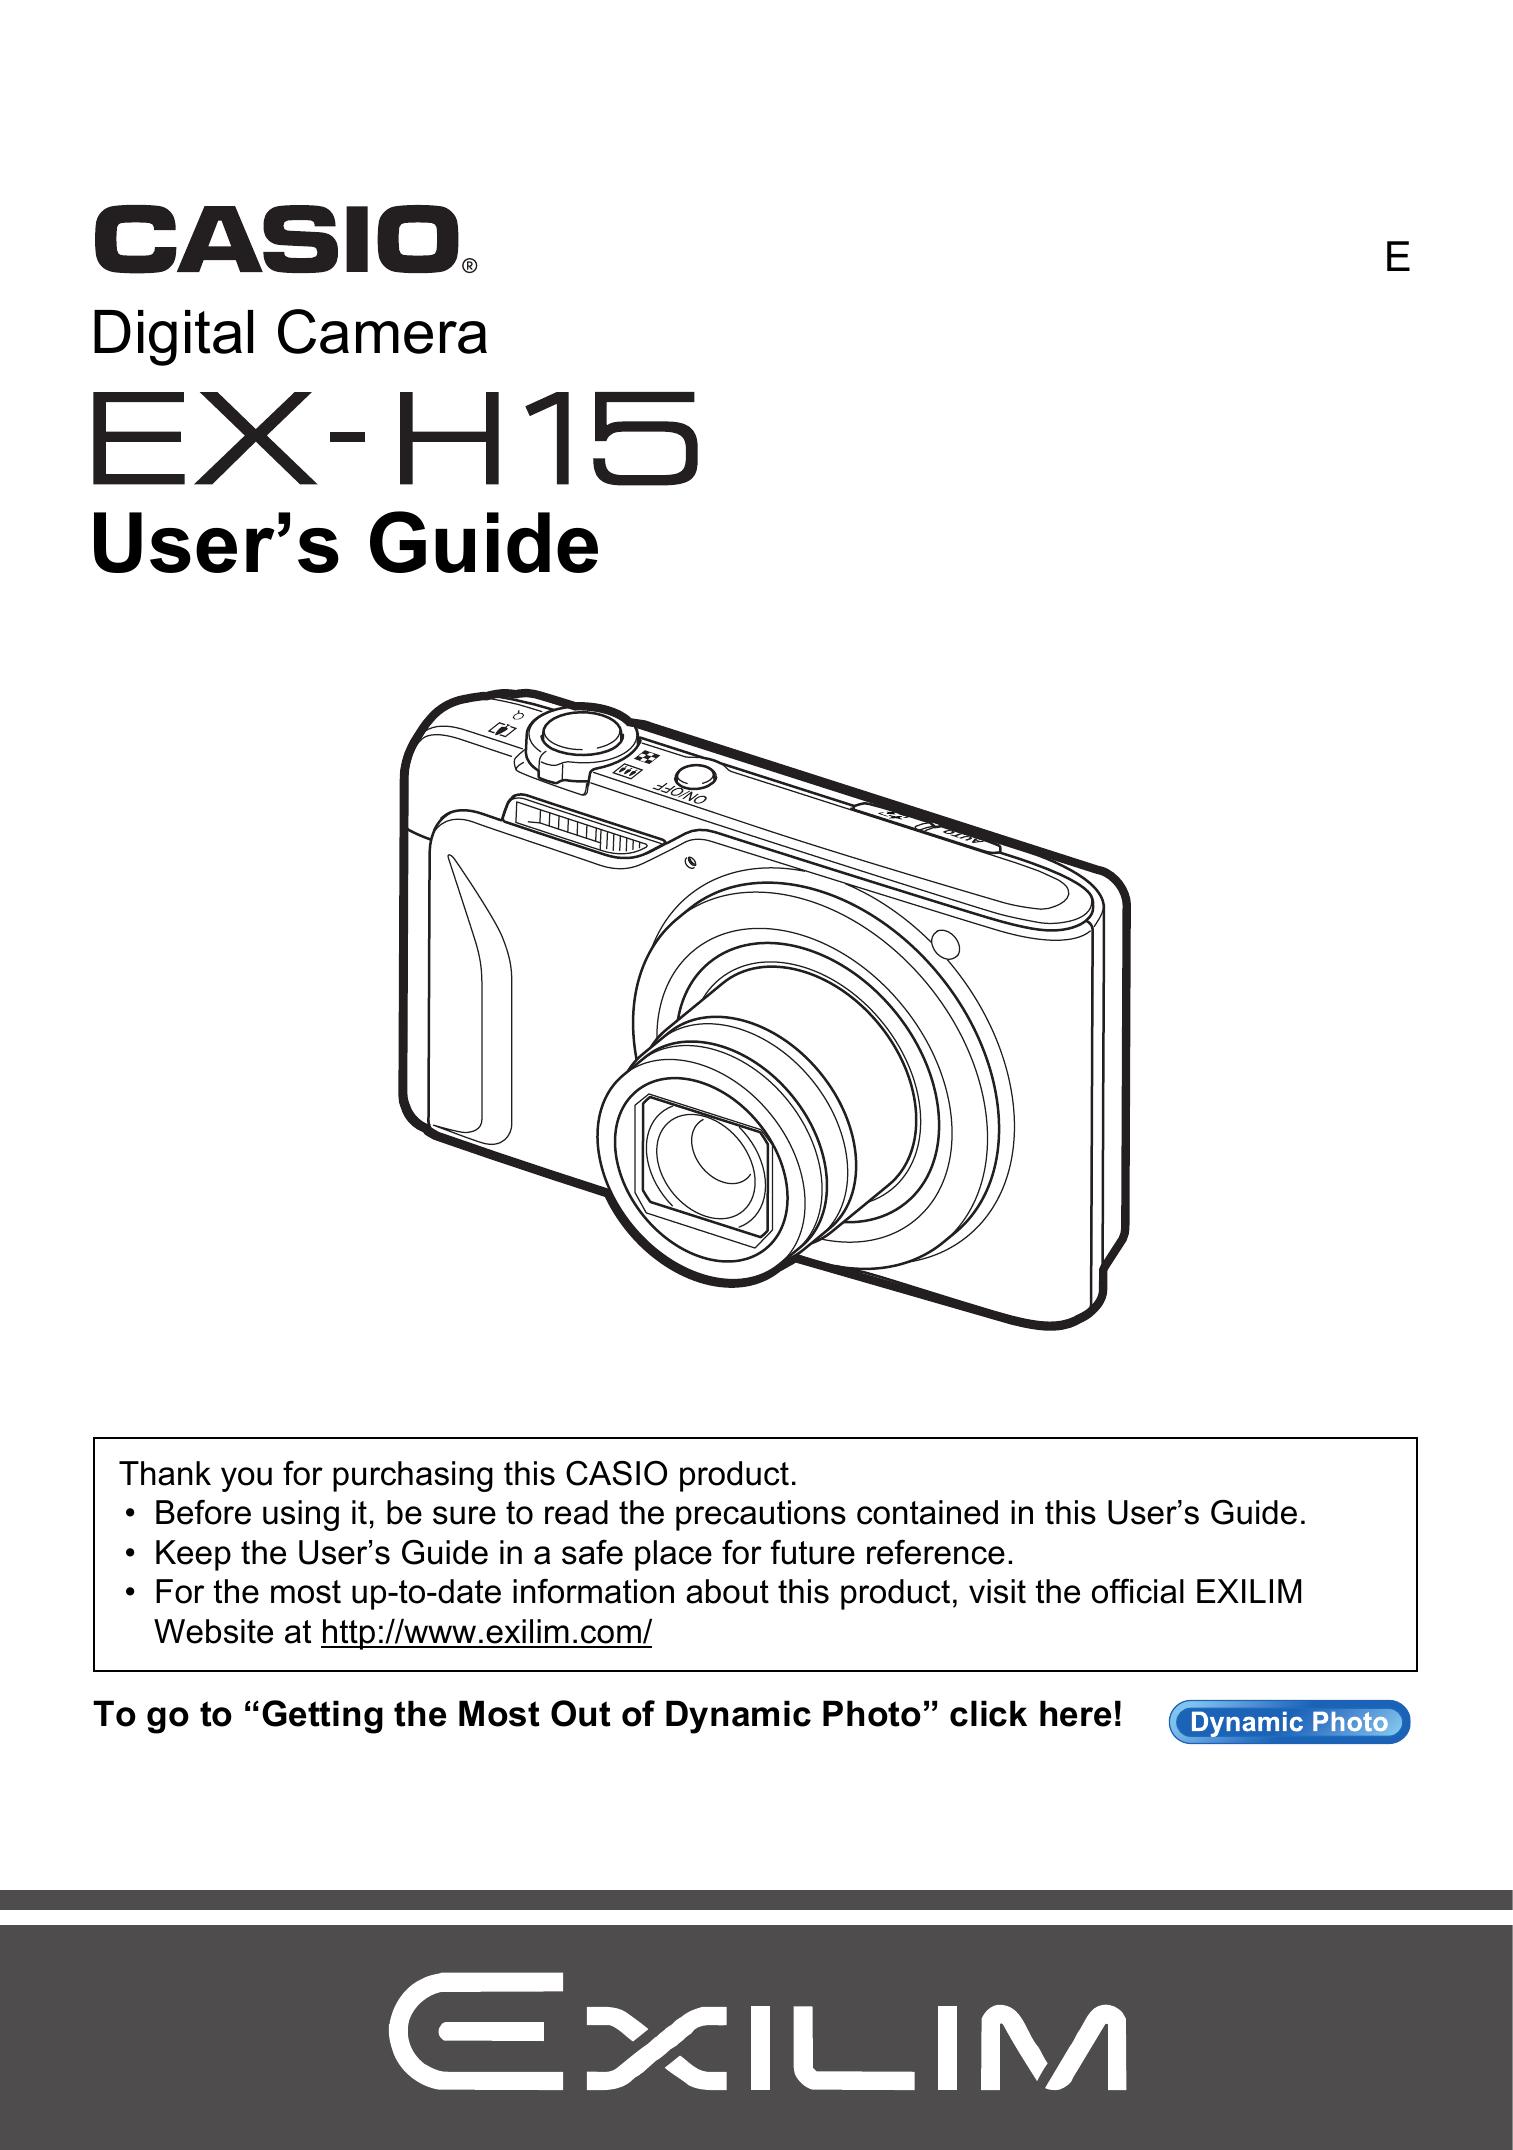 Casio EX-H15 Digital Camera User Manual